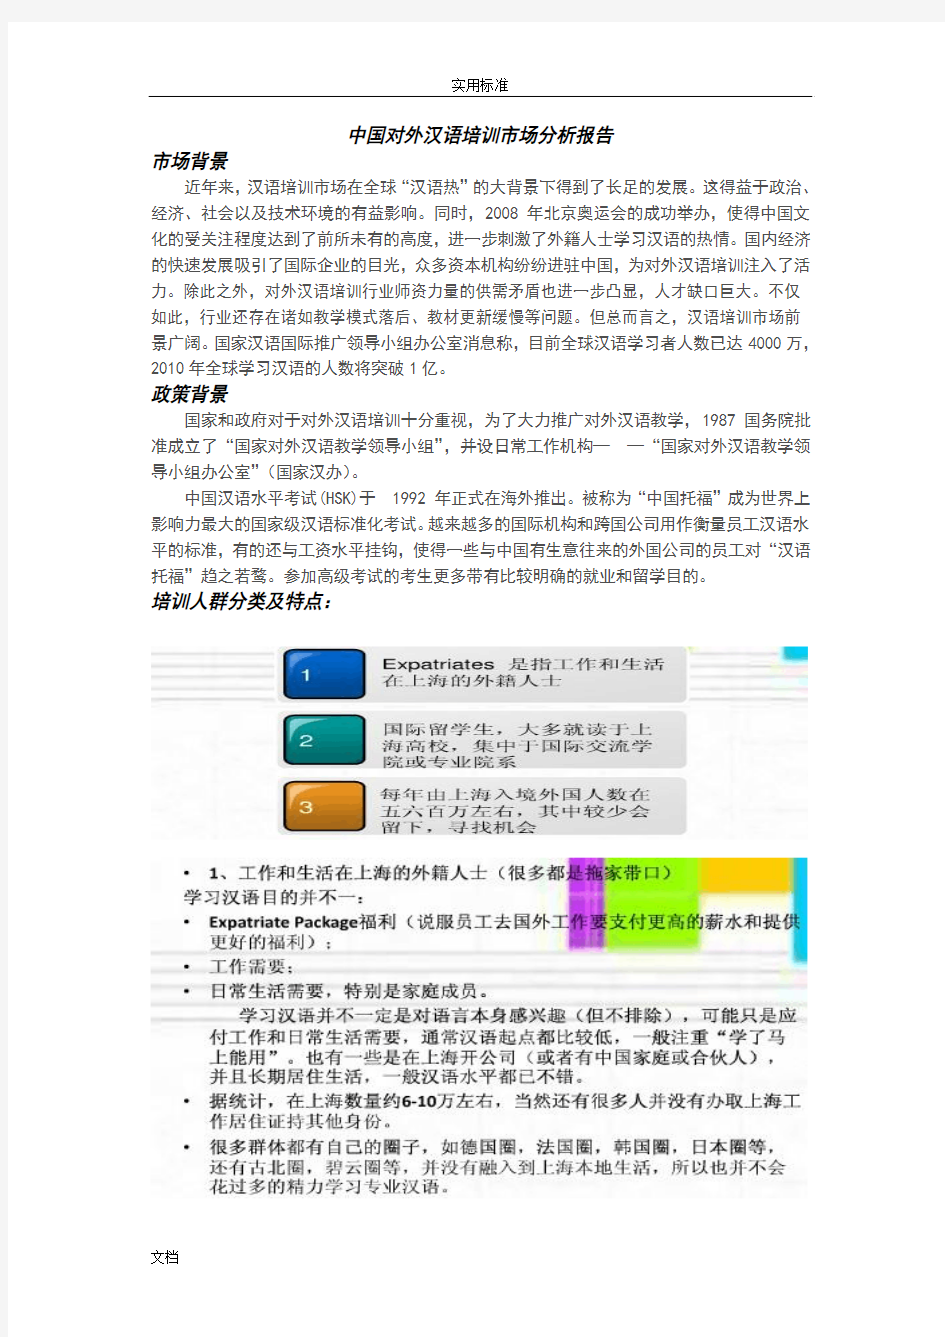 对外汉语教学市场分析报告报告材料(整合版)